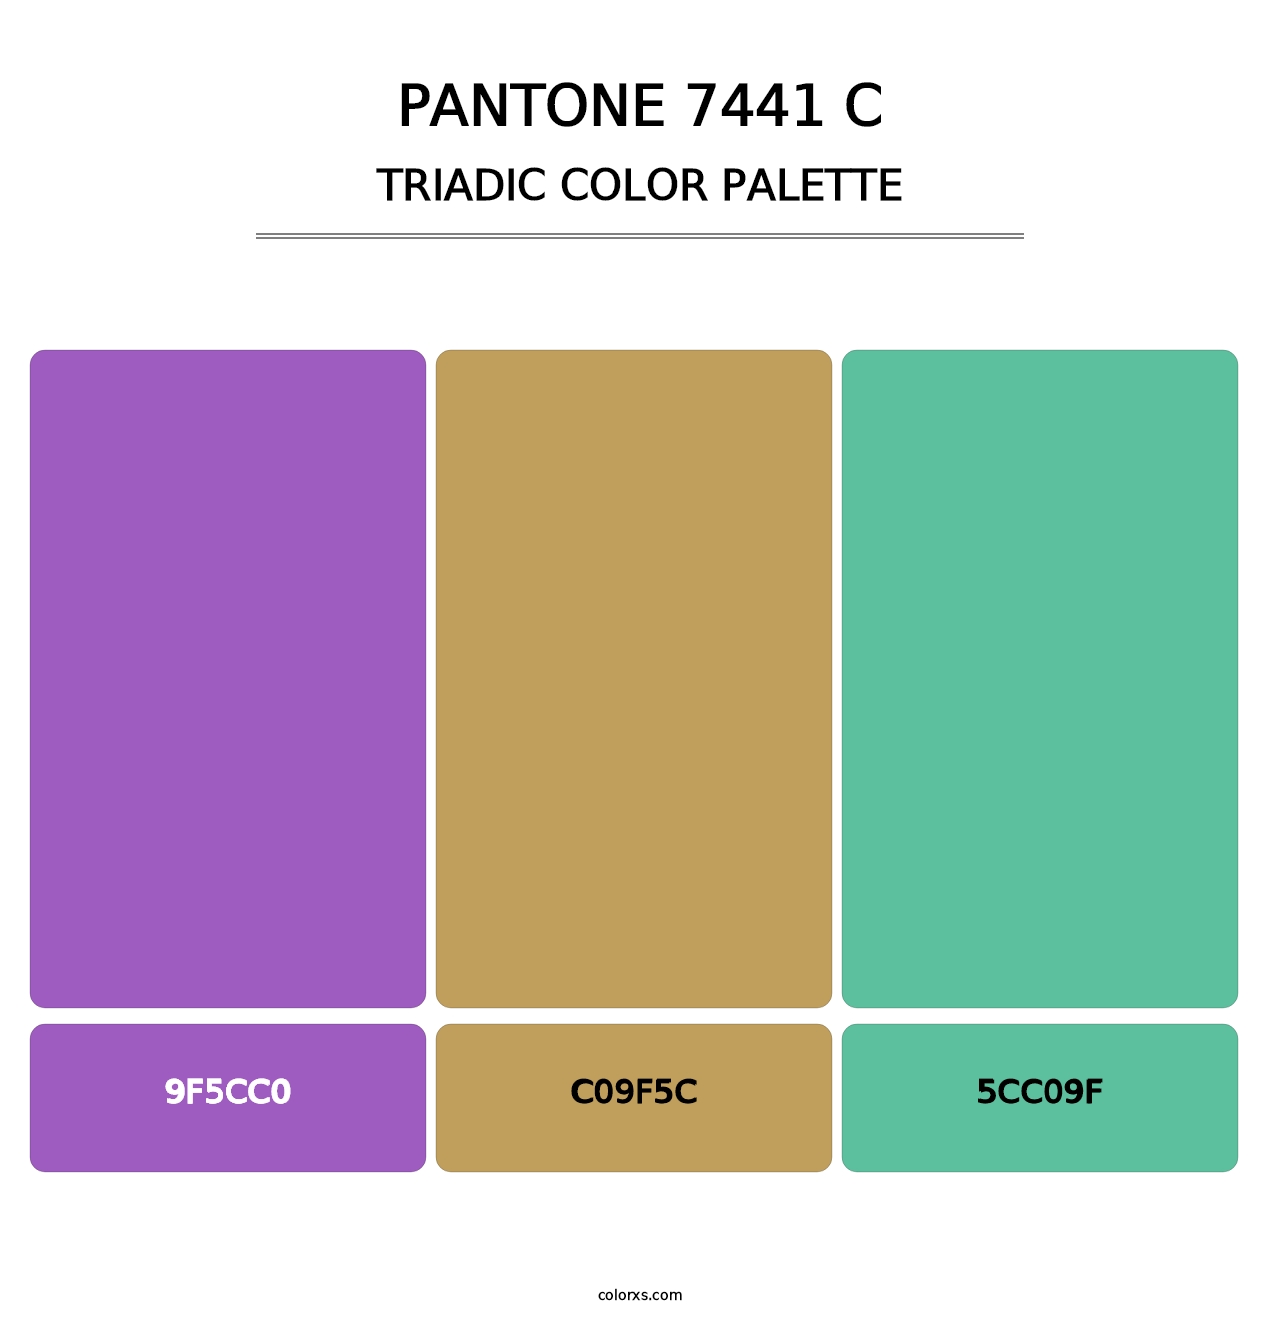 PANTONE 7441 C - Triadic Color Palette